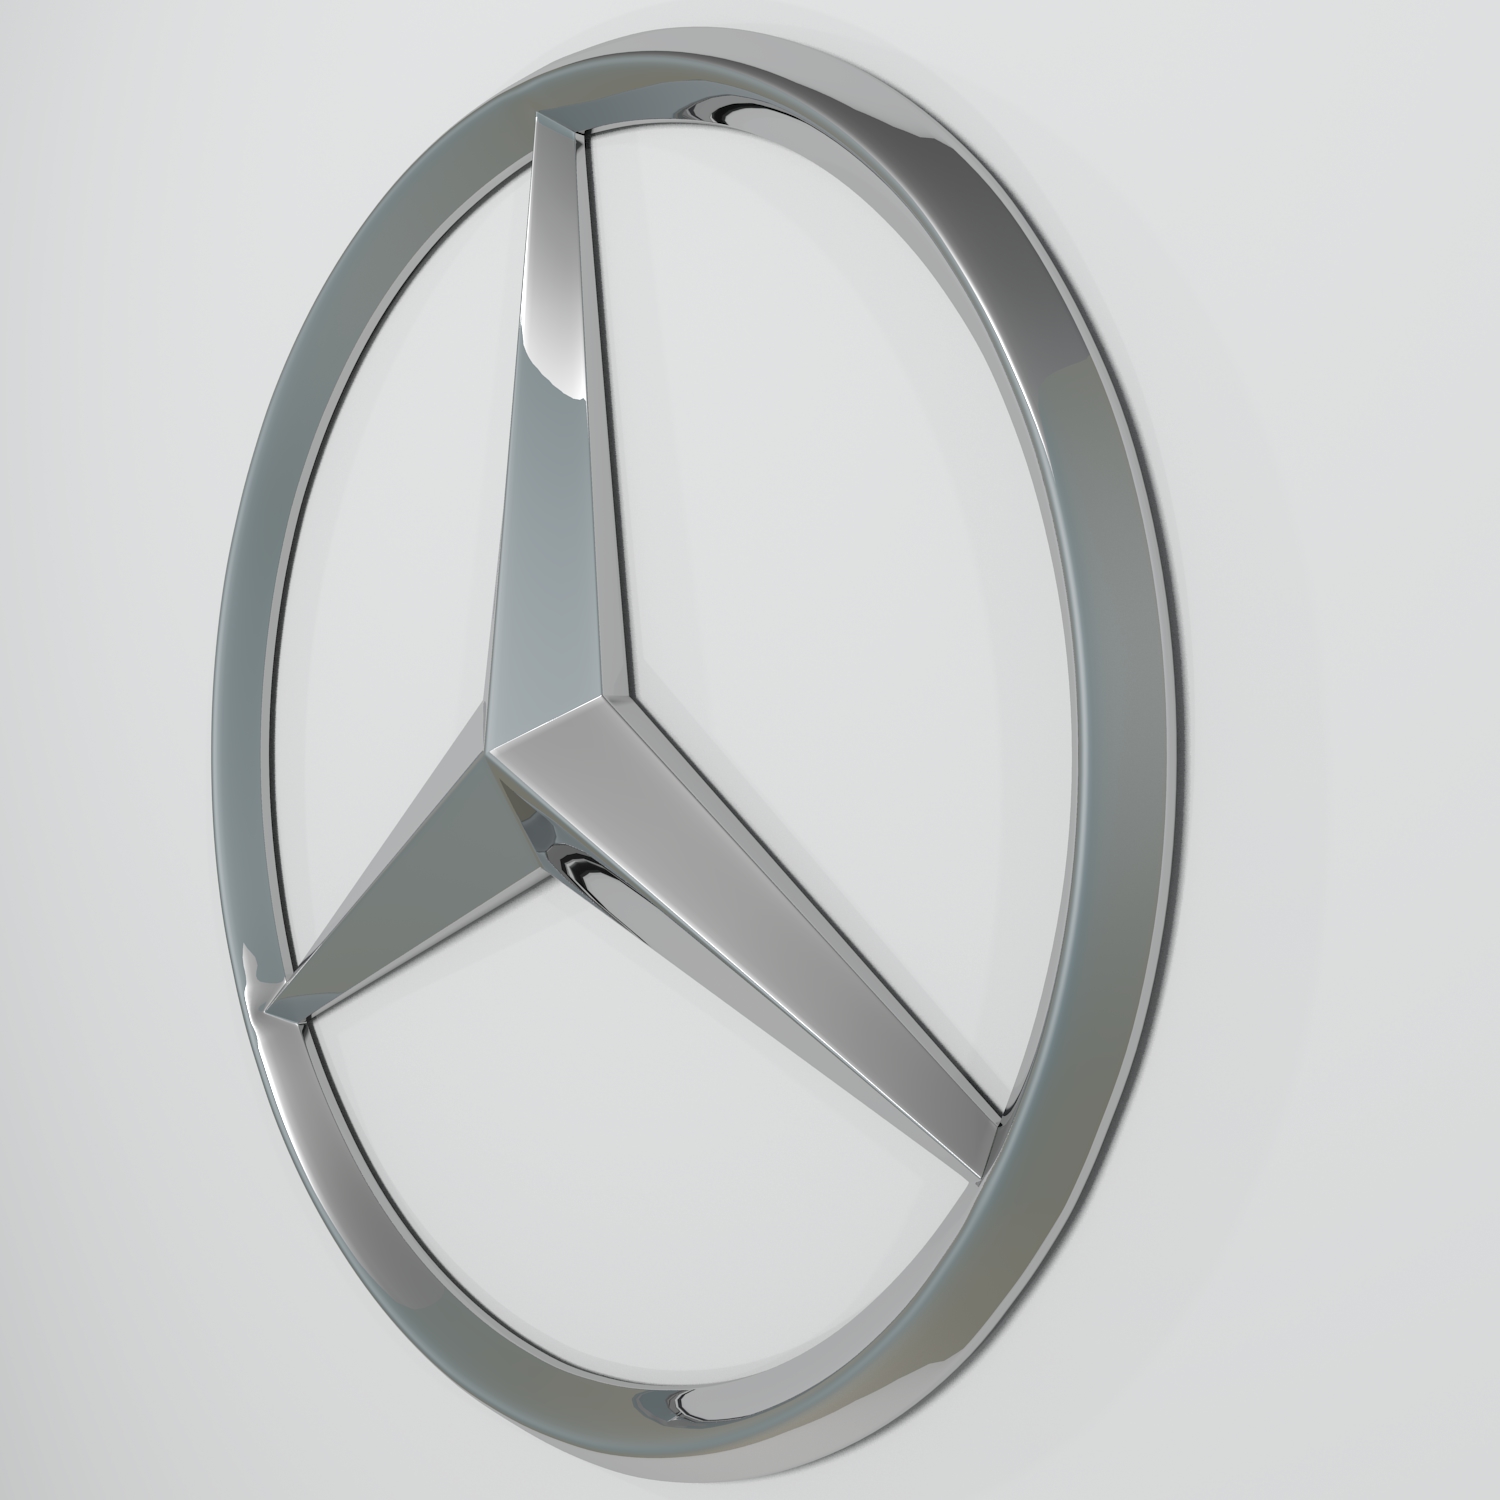 Mercedes Benz Emblem Noble Car Logo Mercedes Logo 3D Mauritius